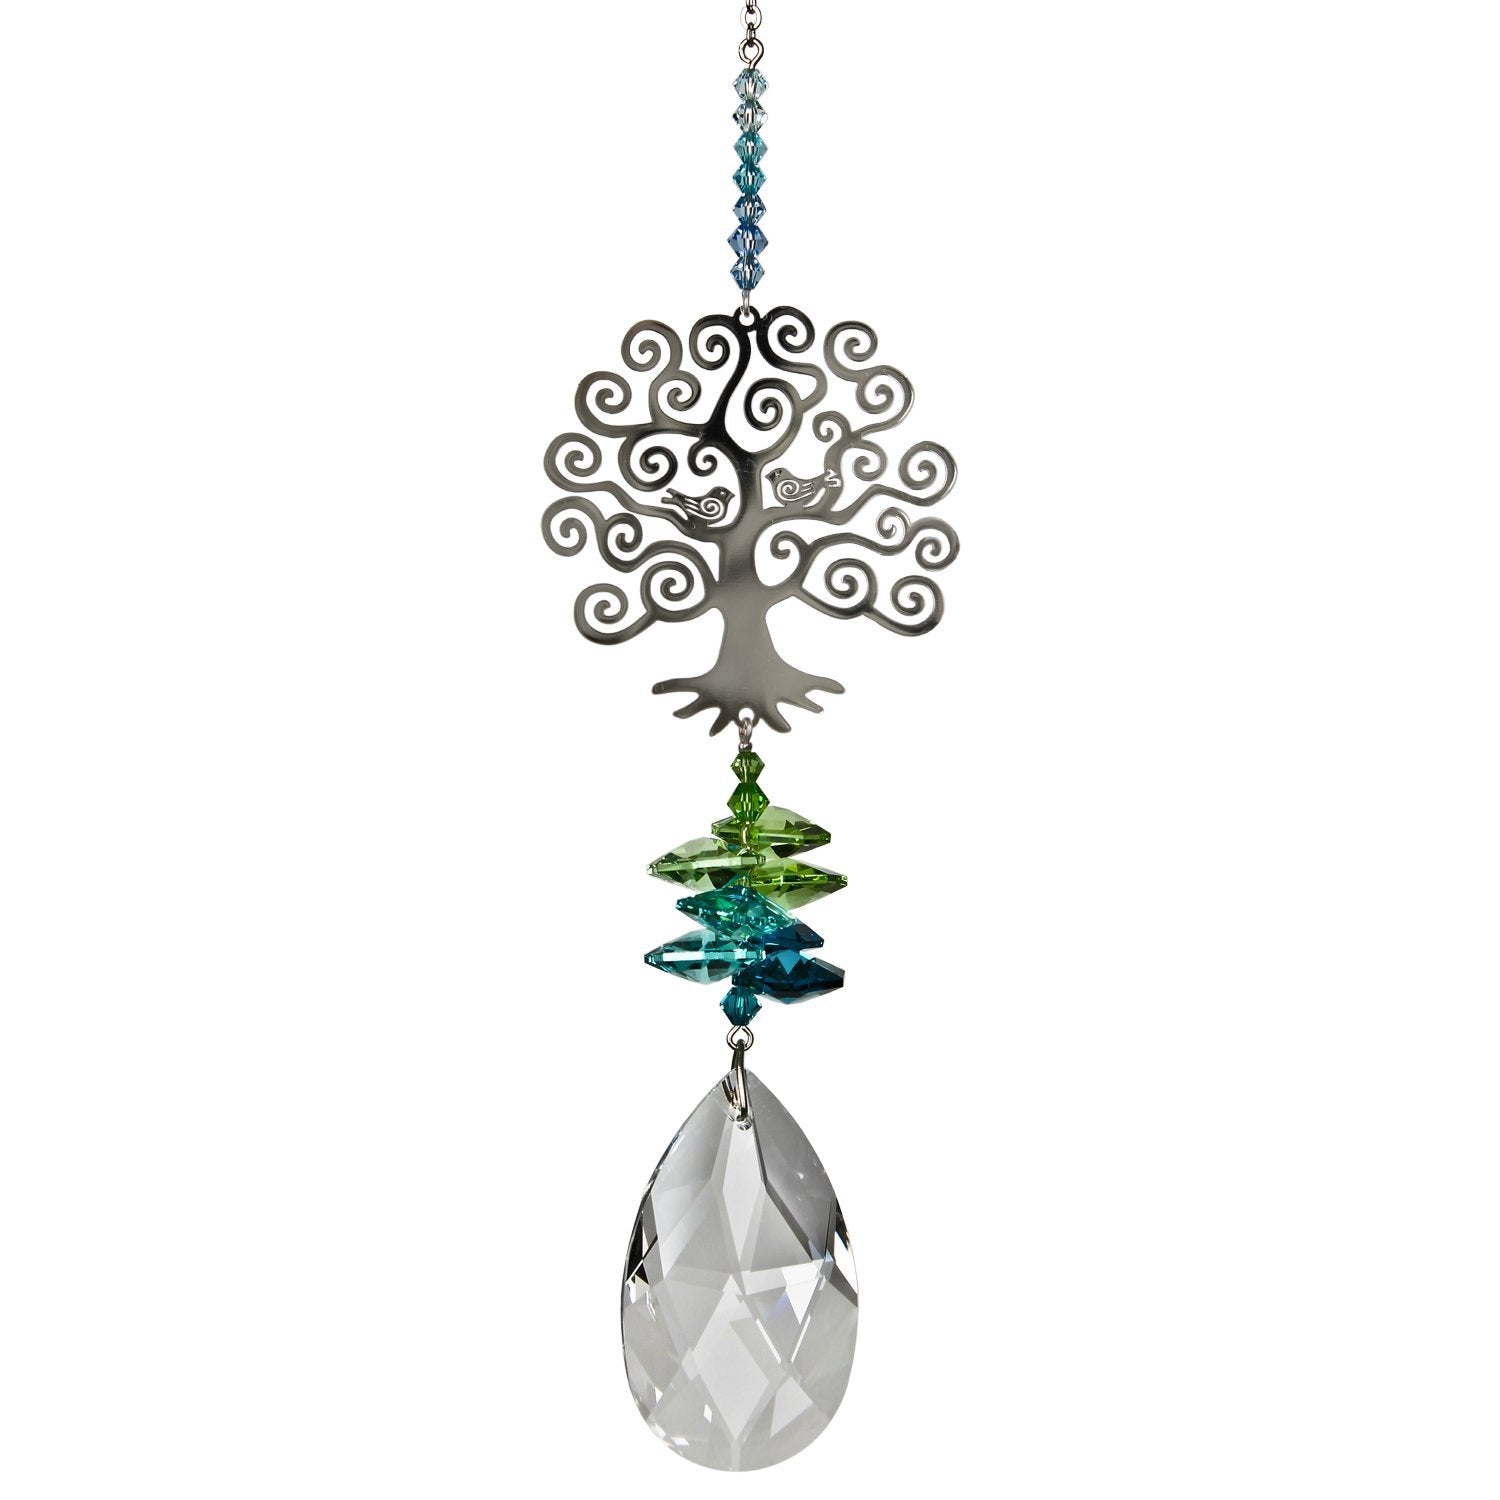 Crystal Fantasy Suncatcher - Large, Tree of Life alternate product image